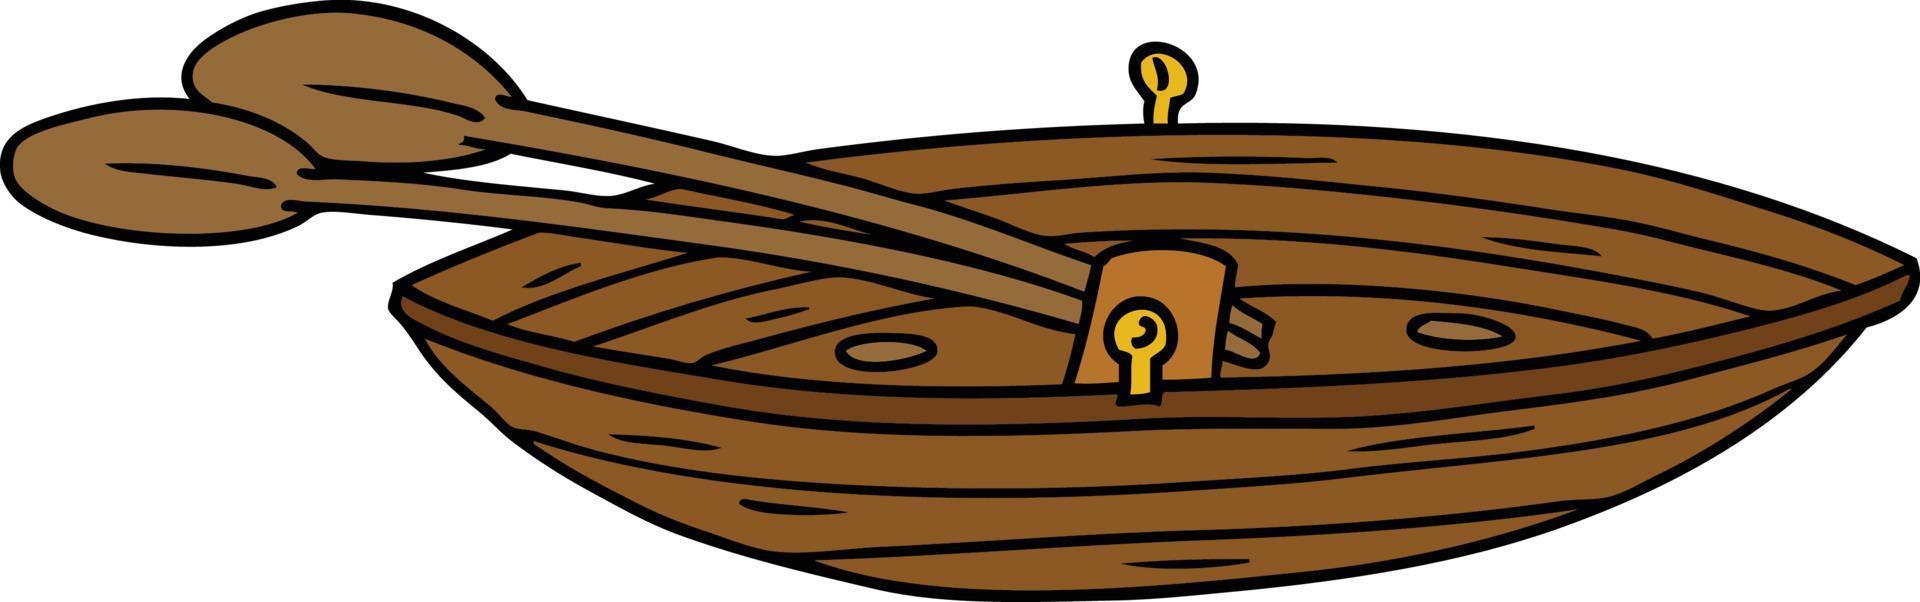 garabato de dibujos animados de un barco de madera vector